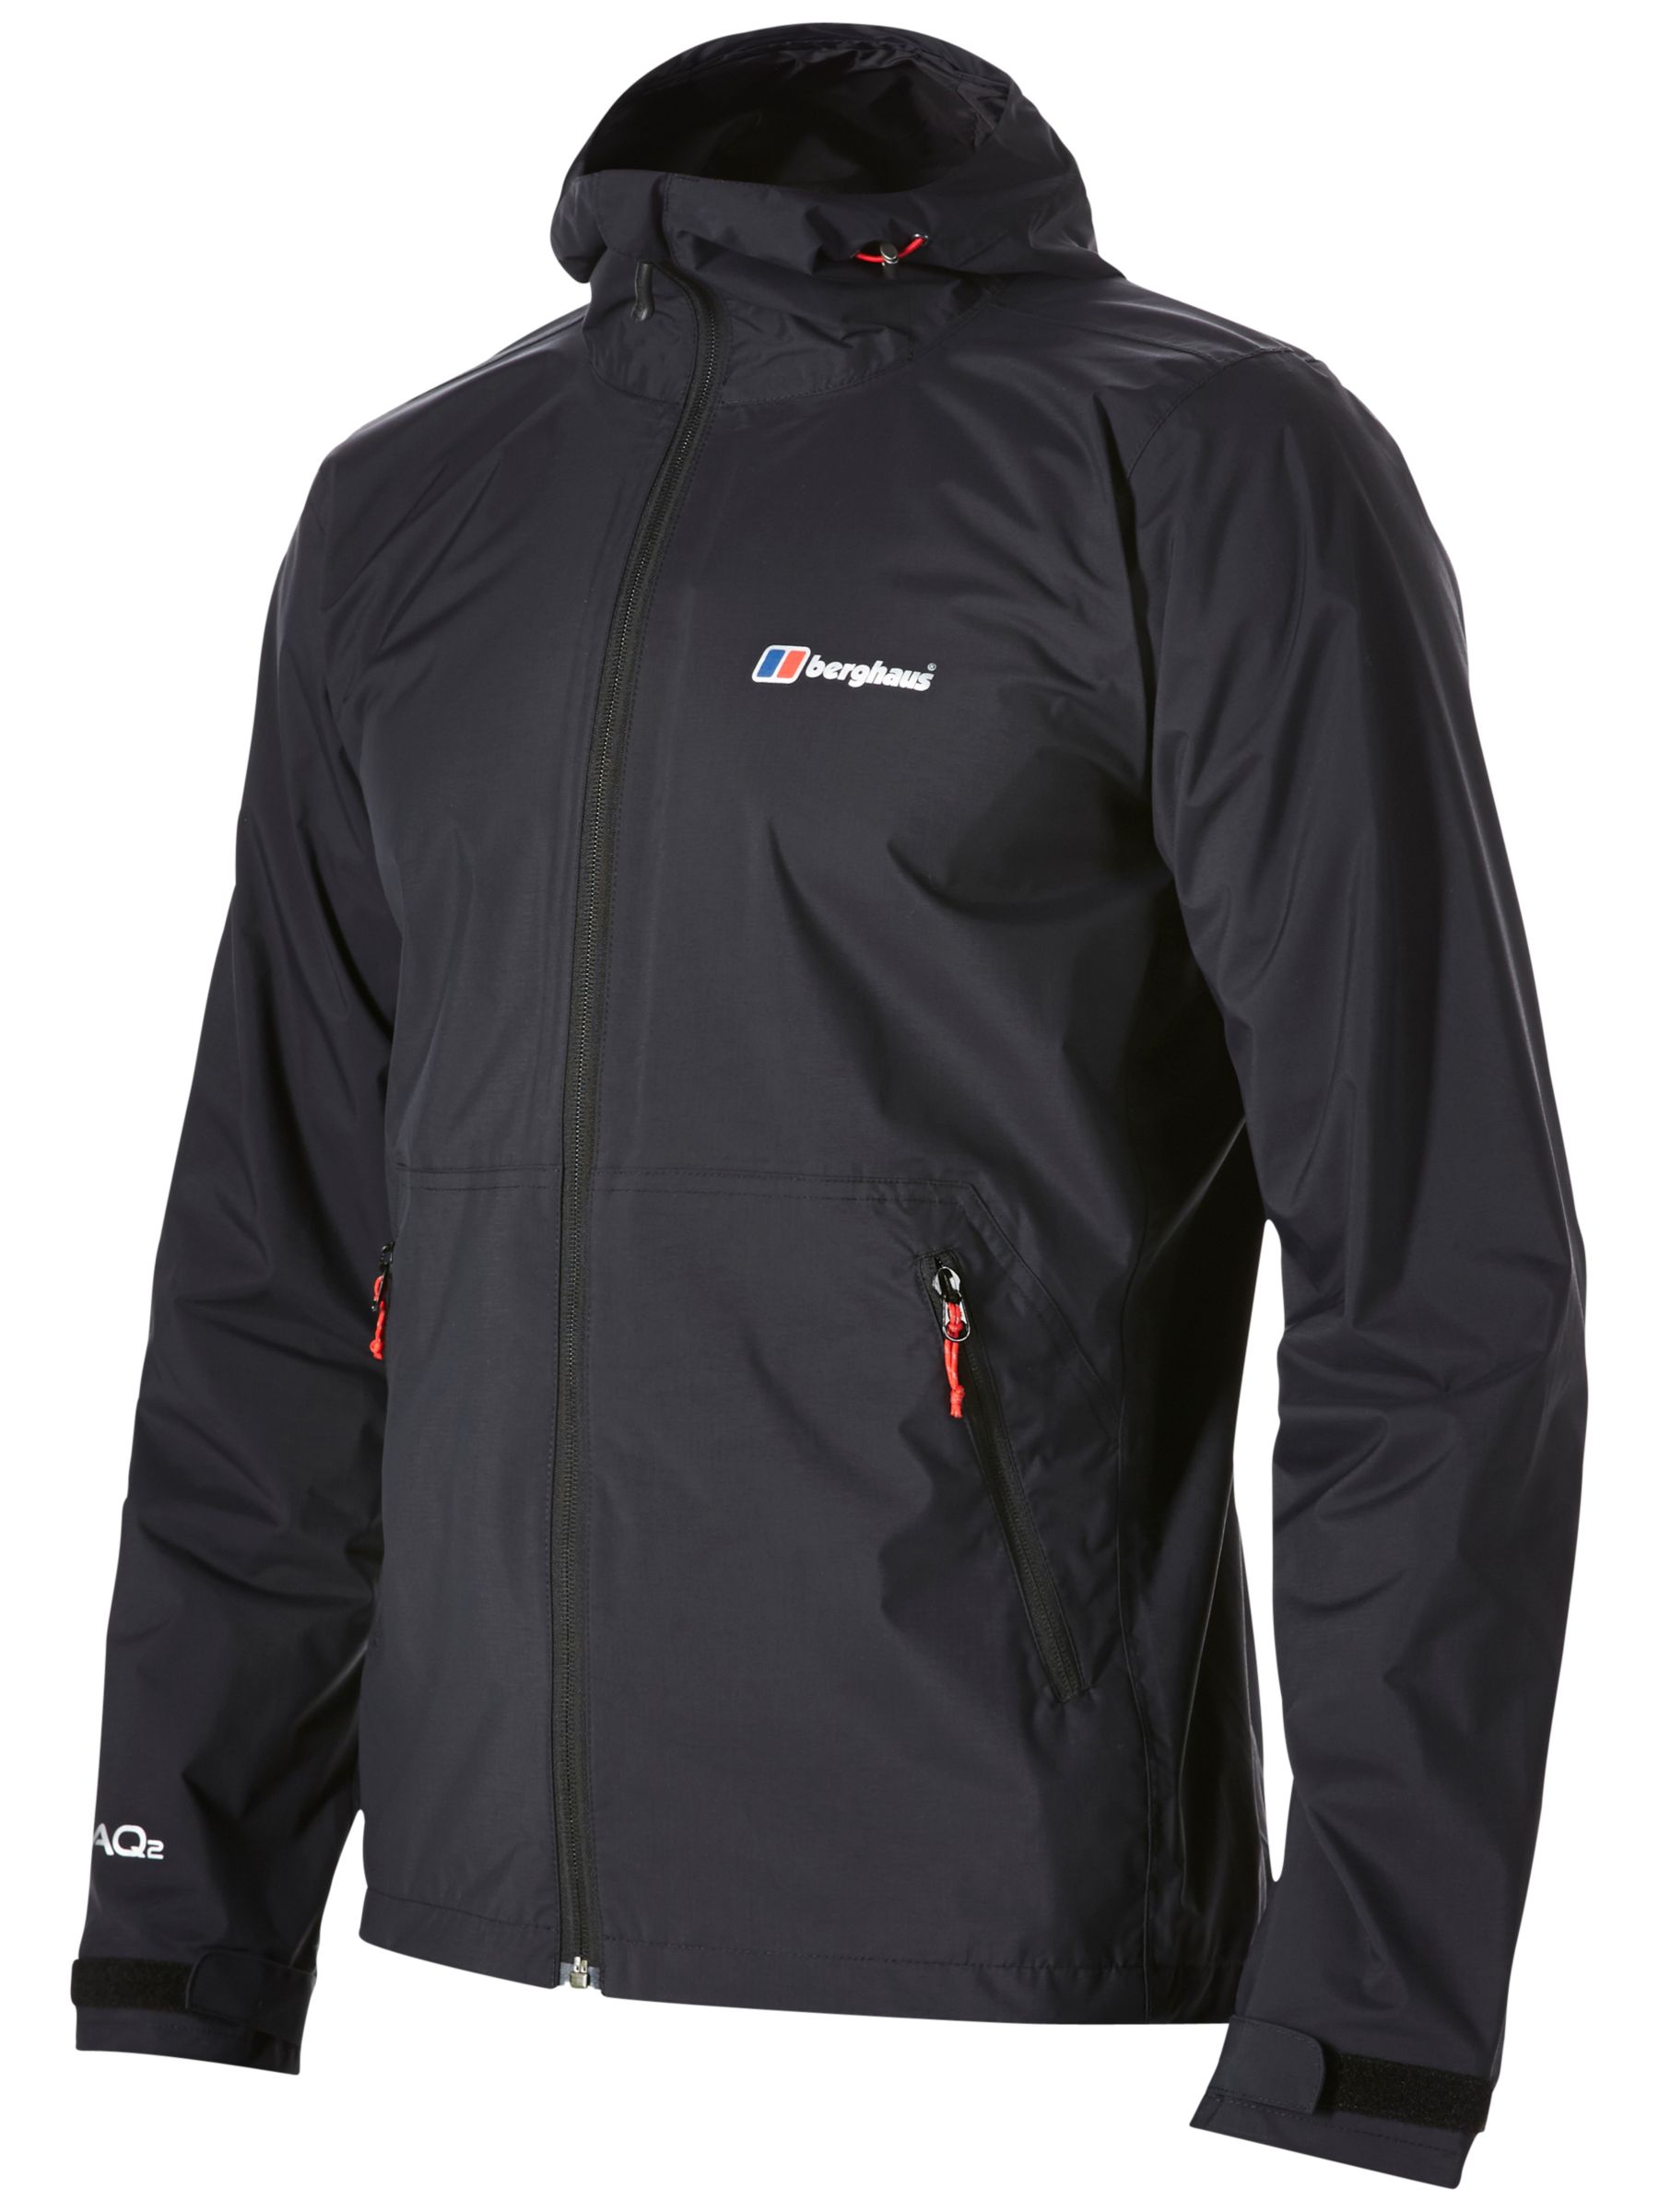 Berghaus Stormcloud Waterproof Men's Jacket, Black, S